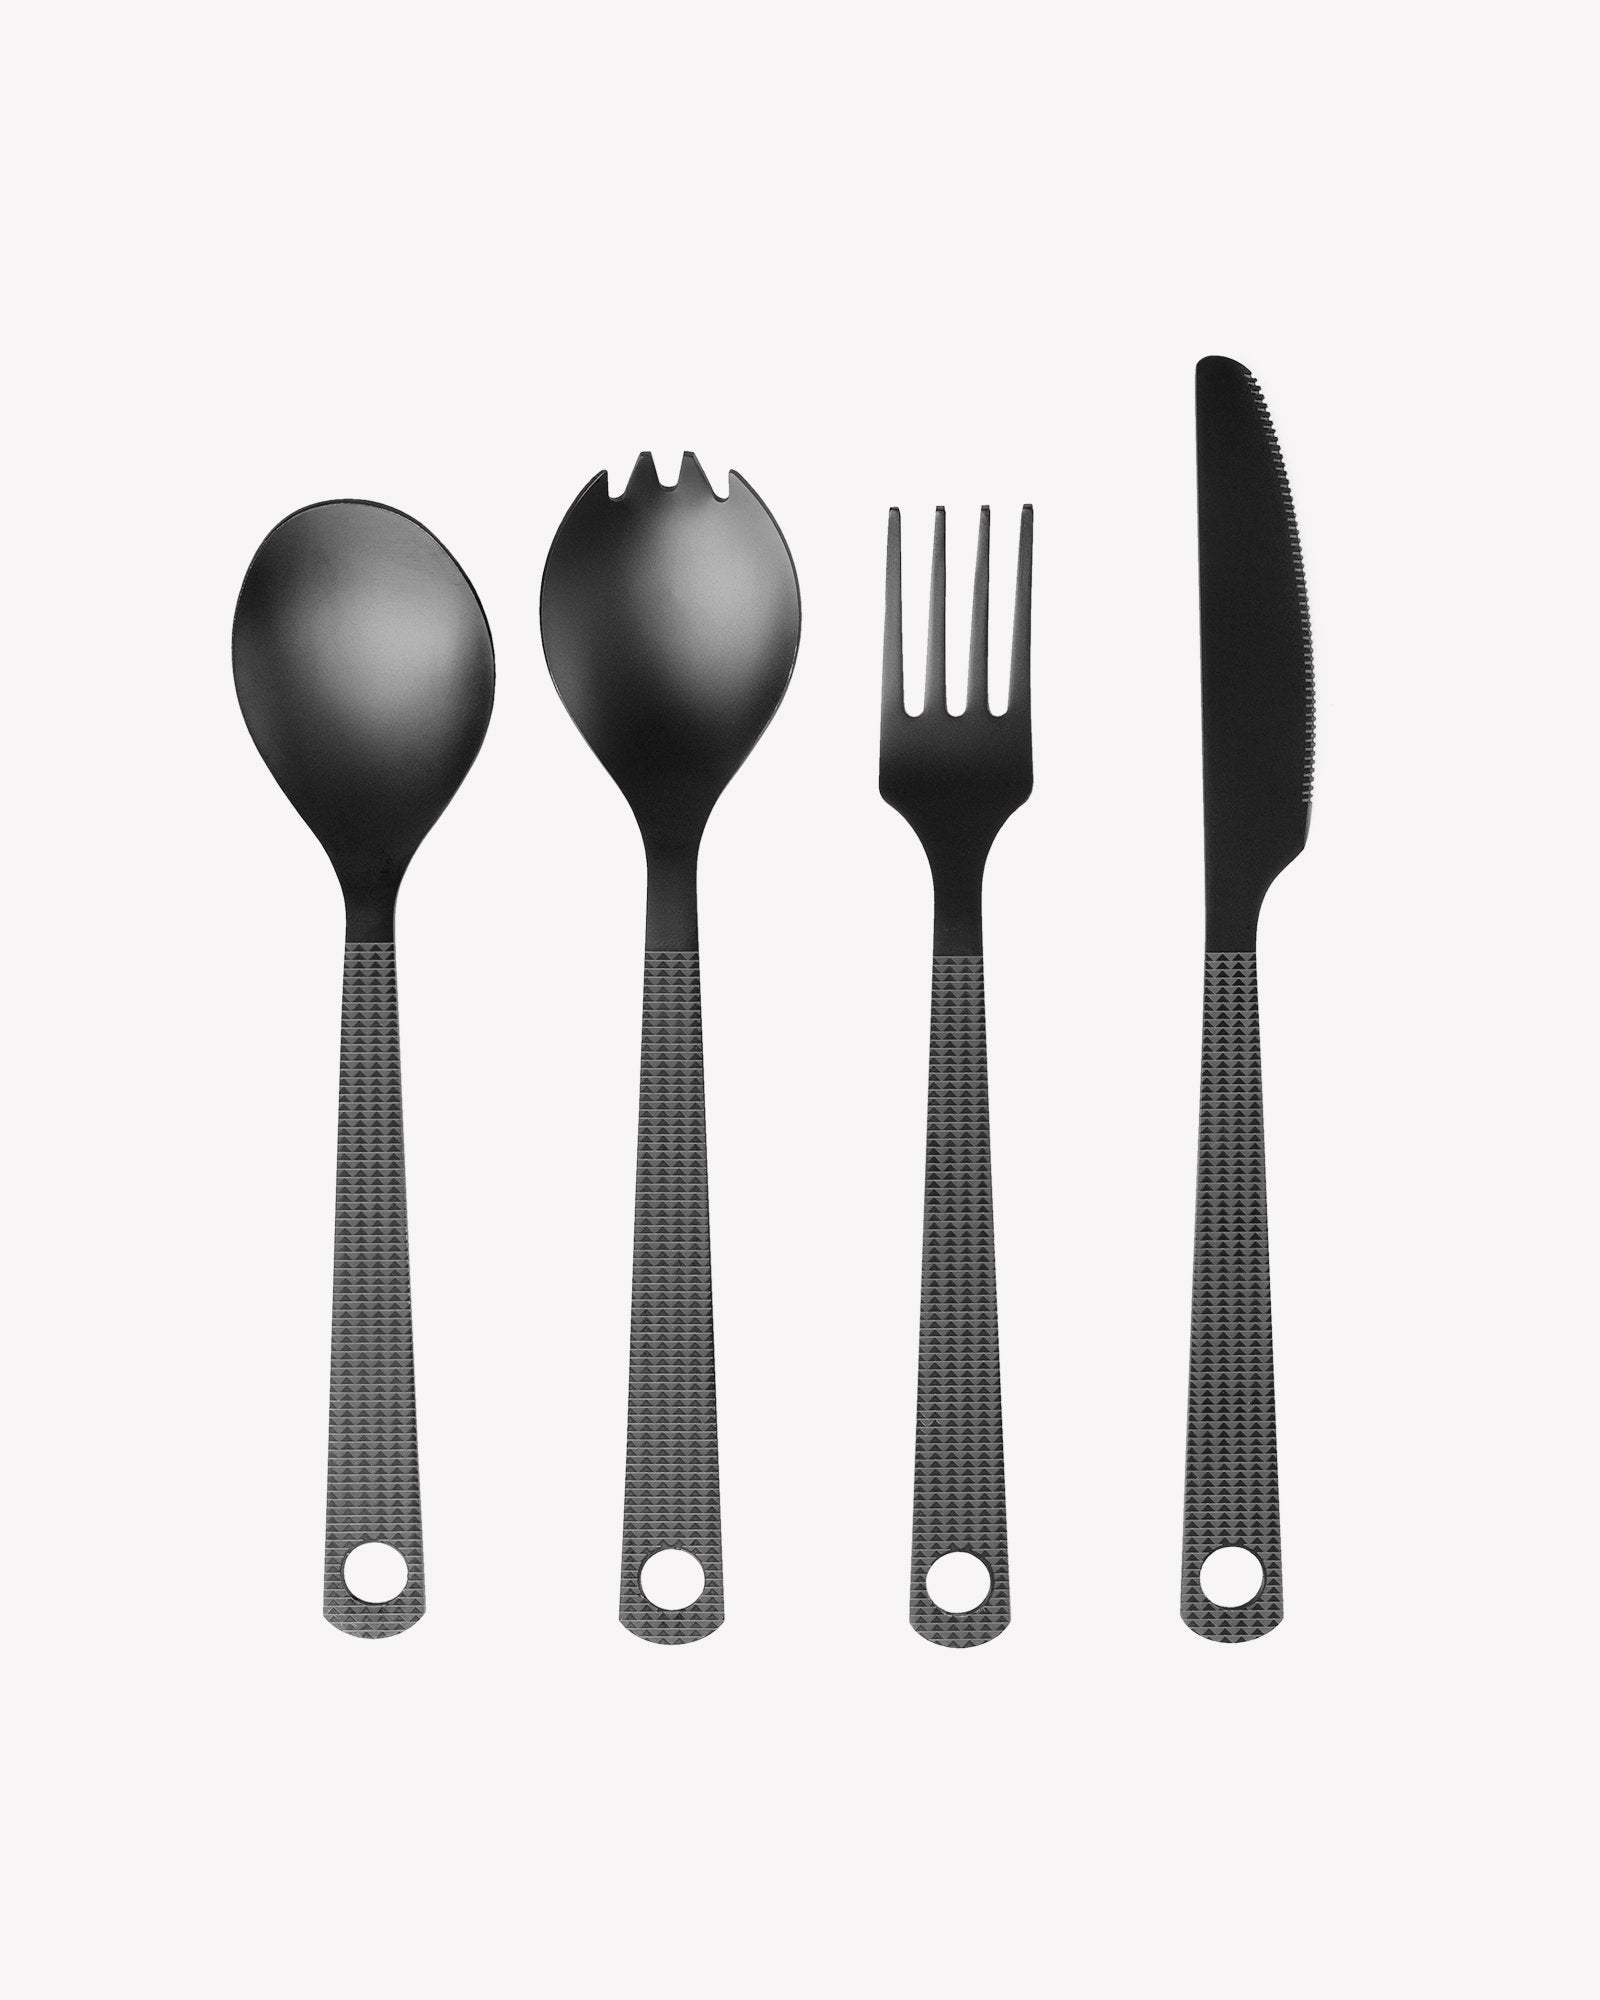 https://soillholds.com/cdn/shop/products/black-wolf-cutlery-set-so-ill-so-ill-142560.jpg?v=1695791515